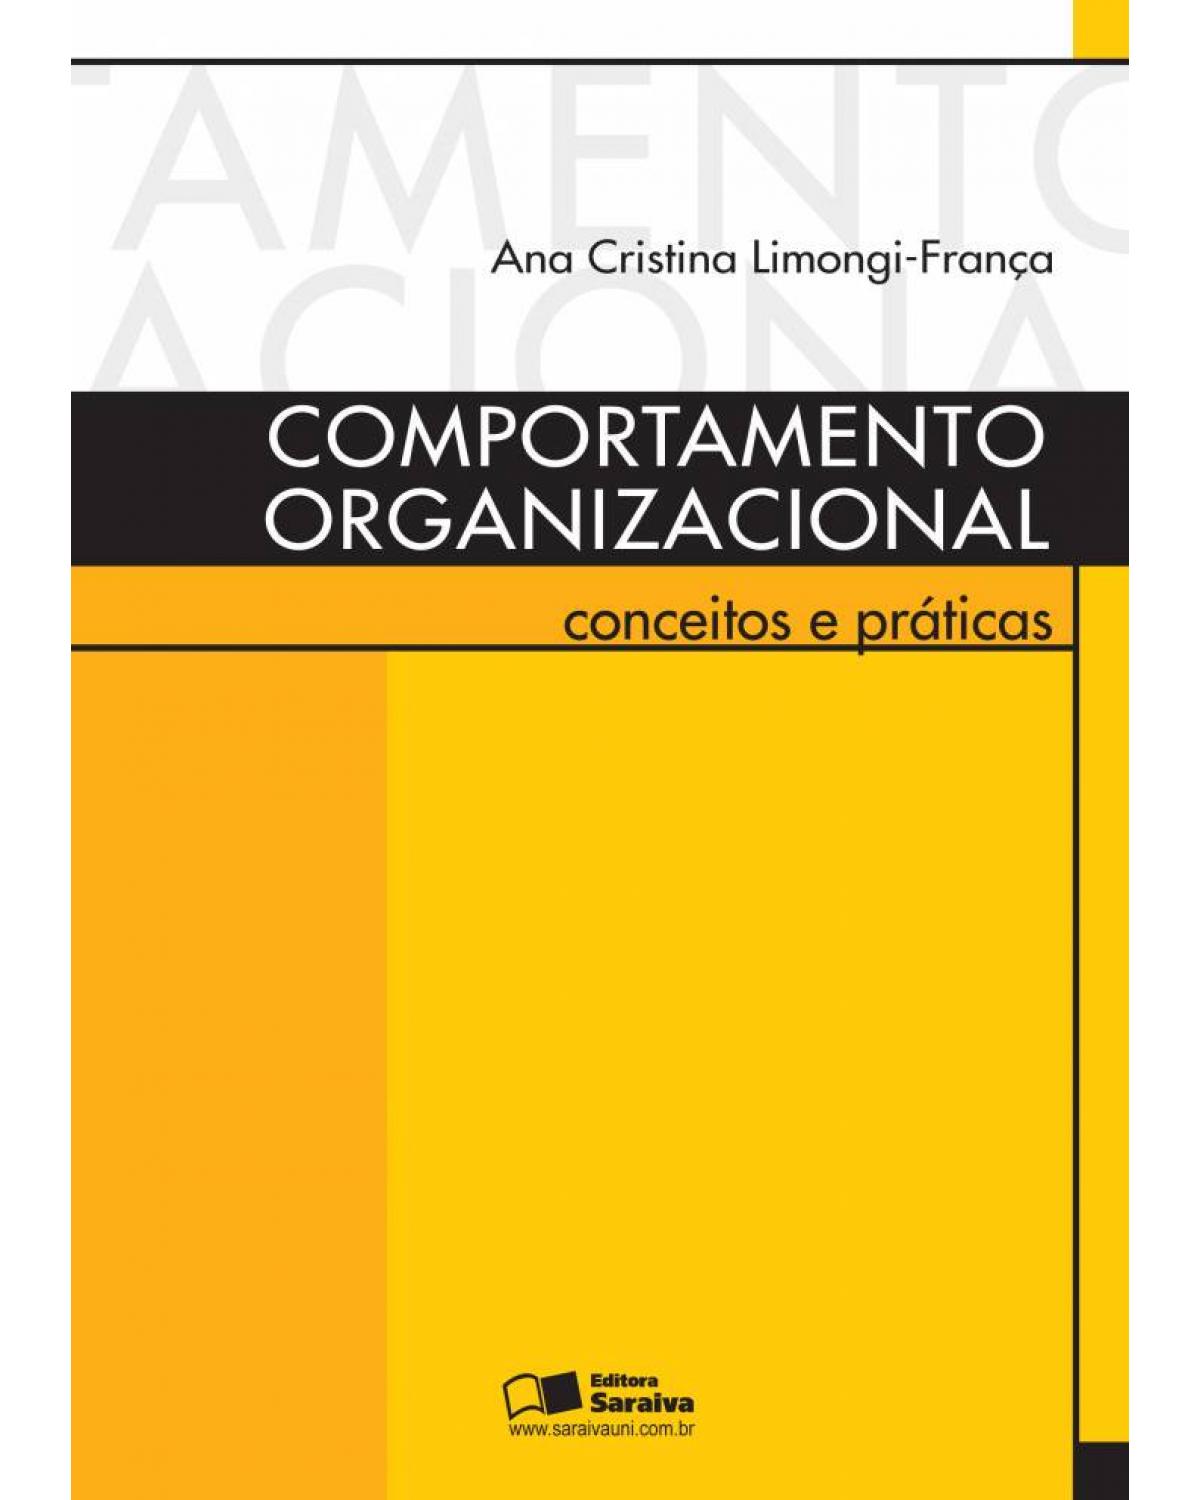 Comportamento organizacional - conceitos e práticas - 1ª Edição | 2010